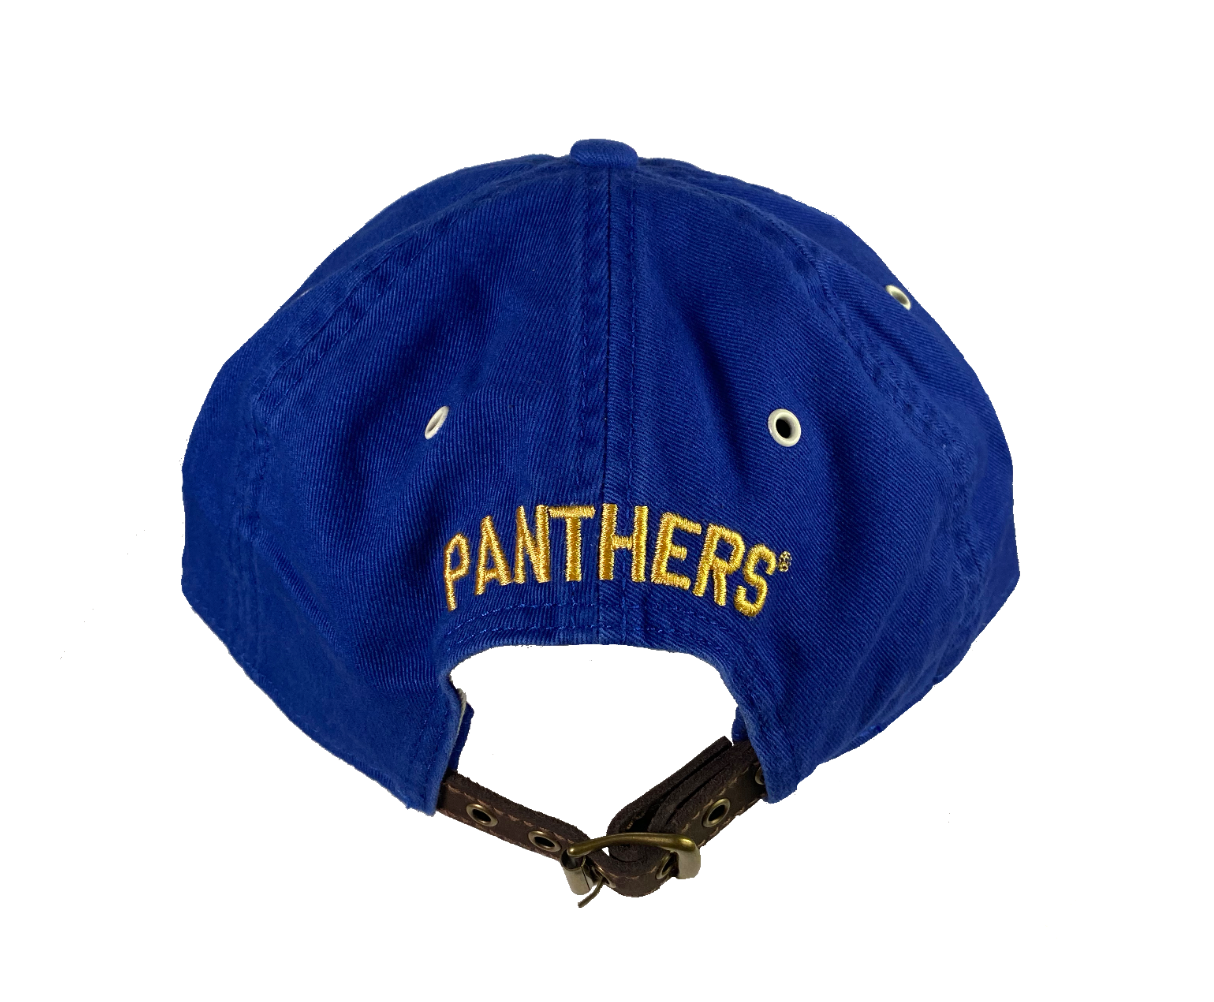 Pitt Premium Dye 100% Cotton Low Profile Baseball Cap